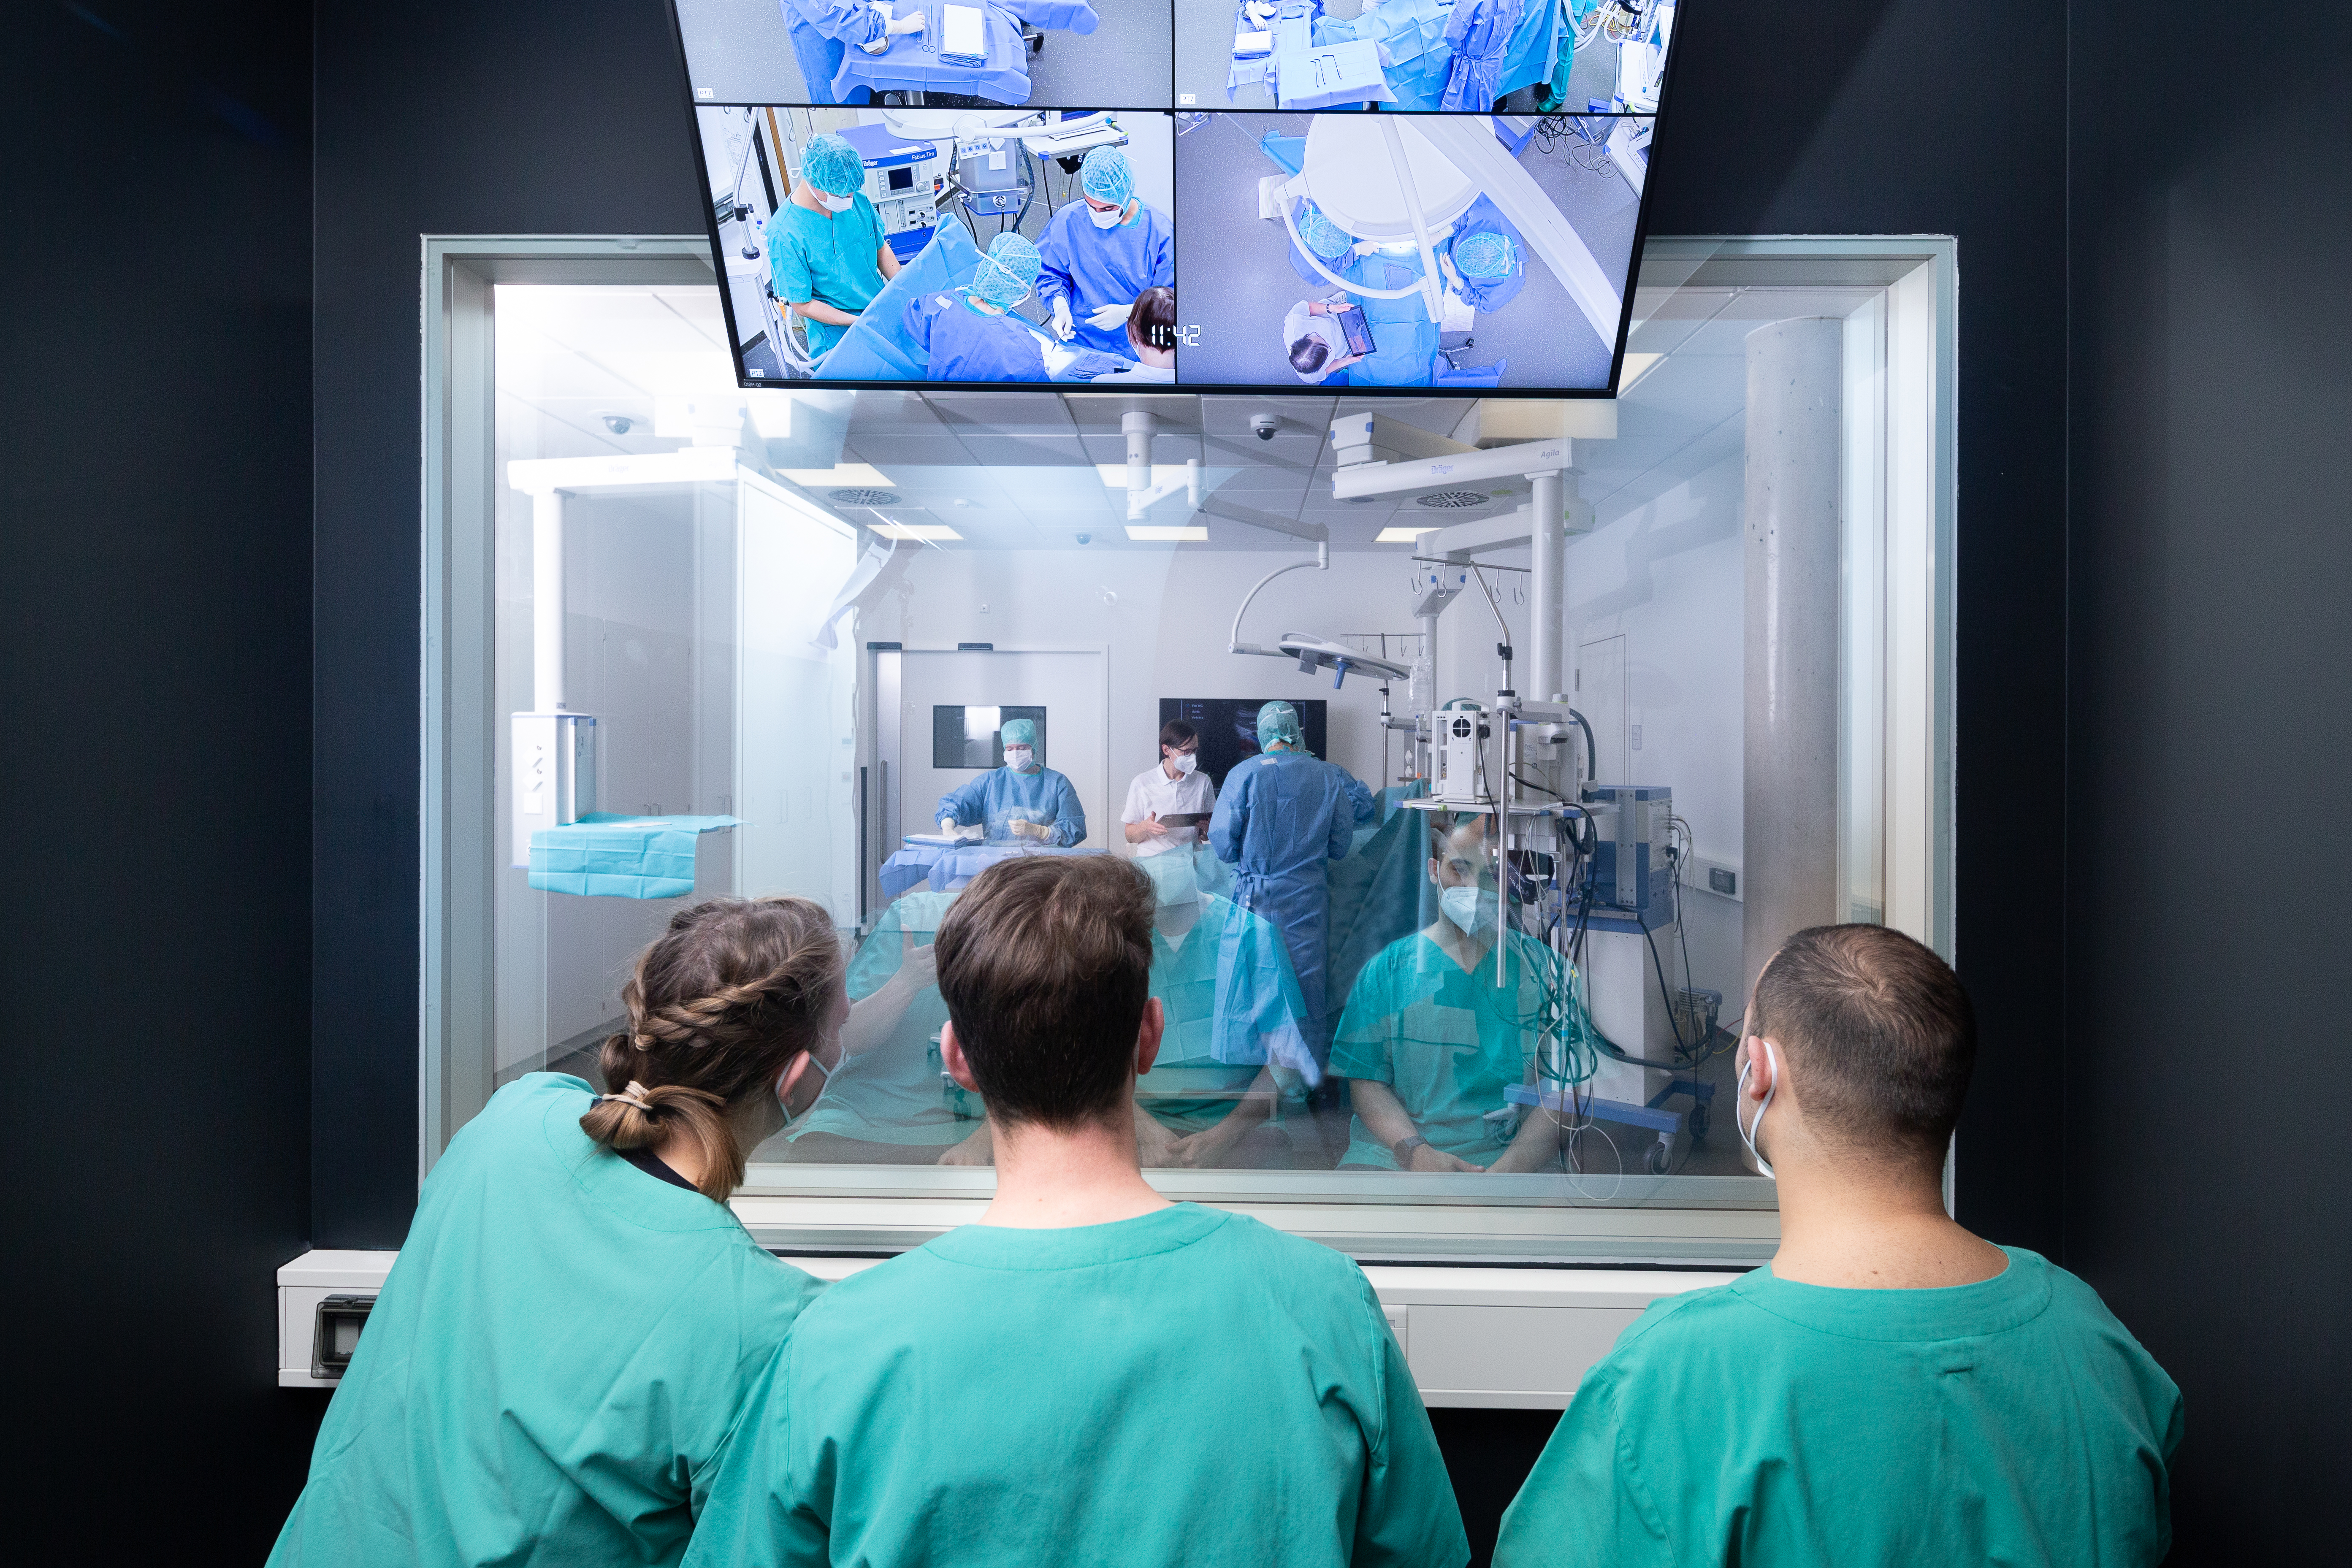 Drei Medizinstudierende sitzen vor einem Operationssaal des Trainingshospitals und schauen einer simulierten Operation zu